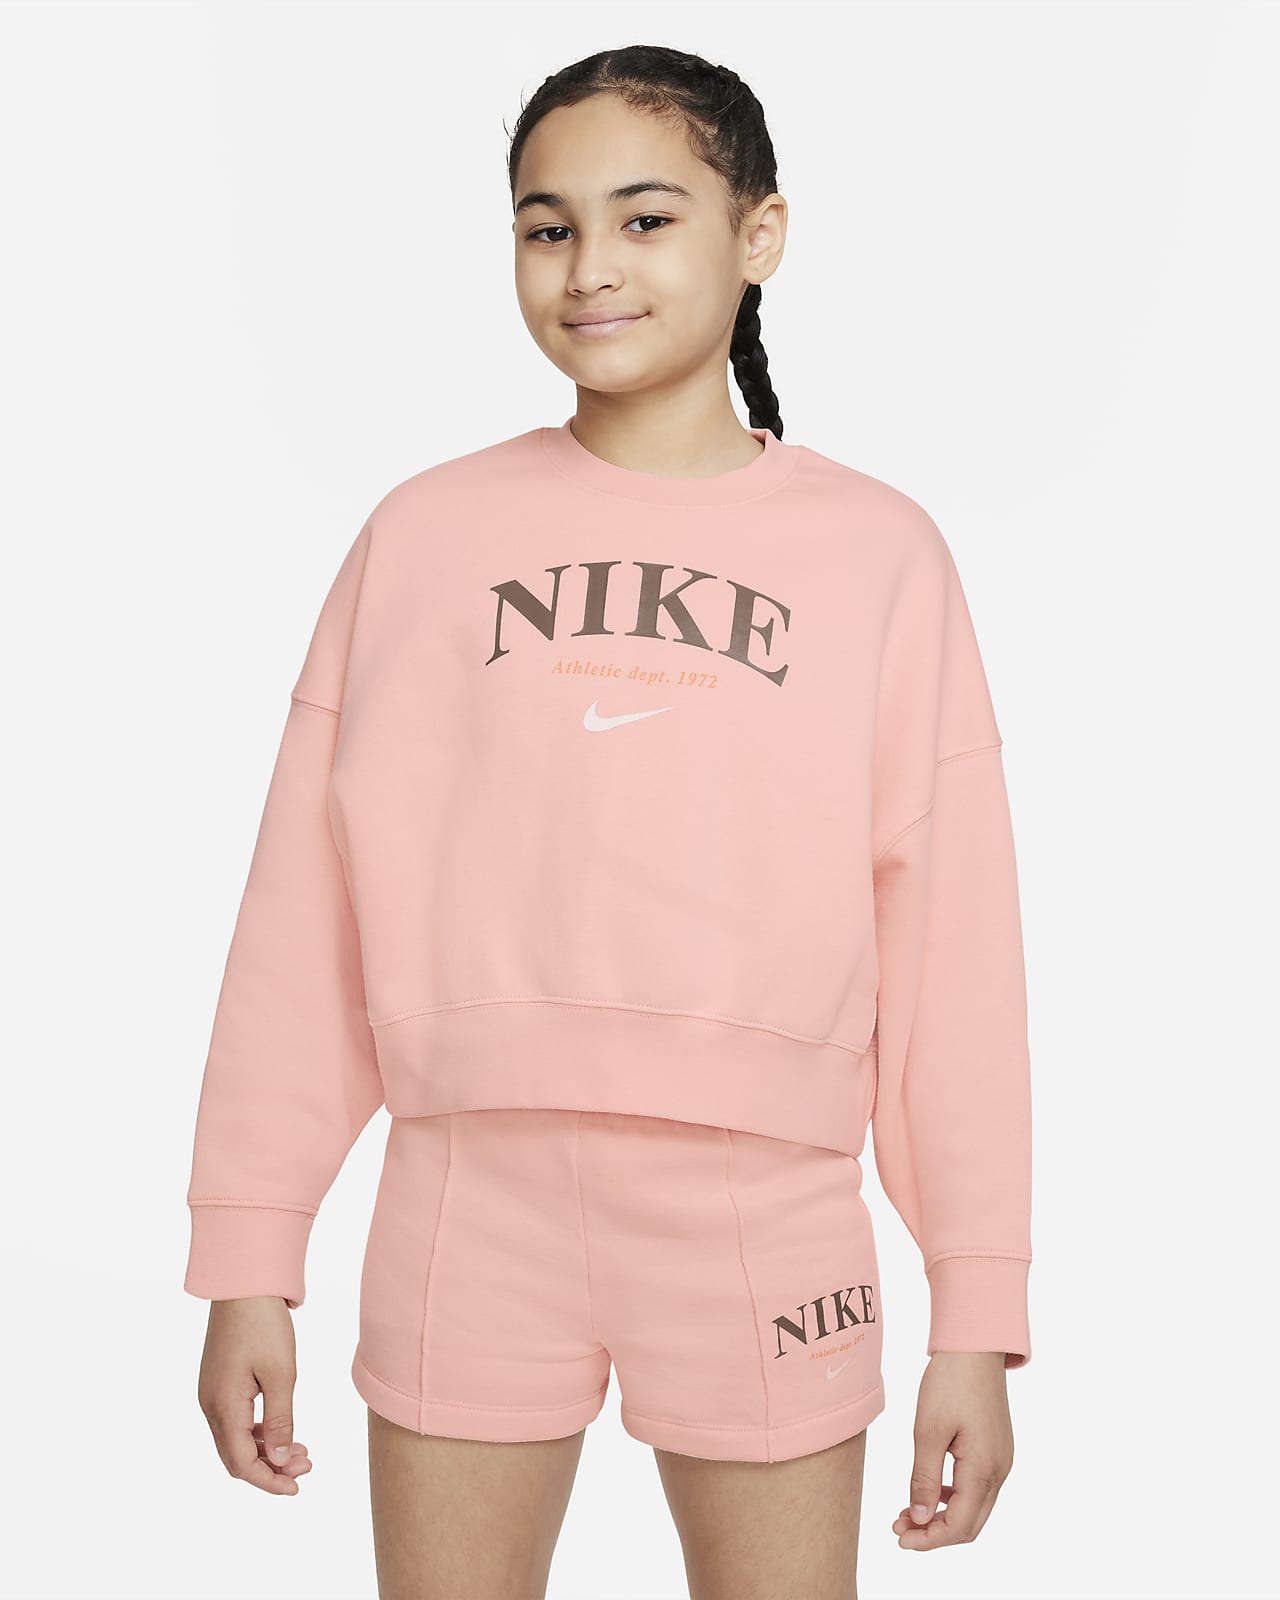 Nike i fleece børn (piger). Nike DK